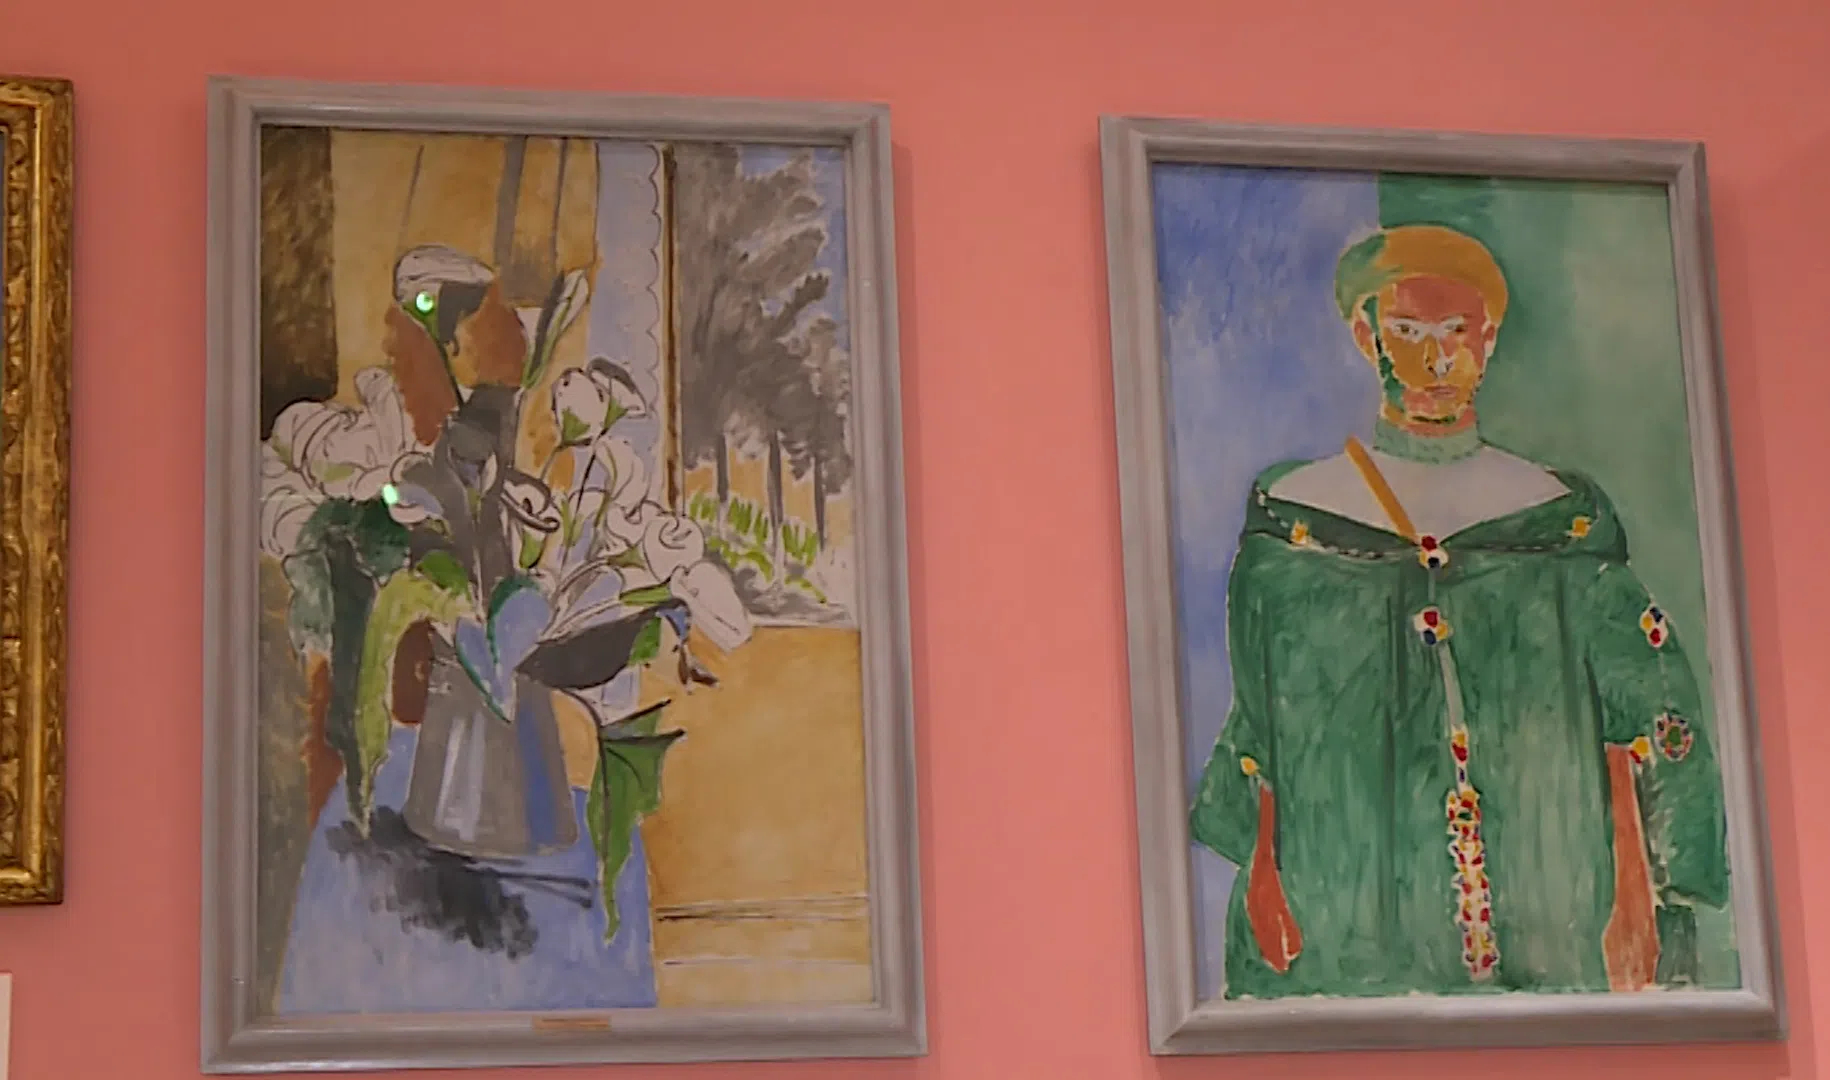 Экспозиция максимально «щукинская»: галерея работ Анри Матисса, какой он сам хотел её видеть &#8212;  в Эрмитаже